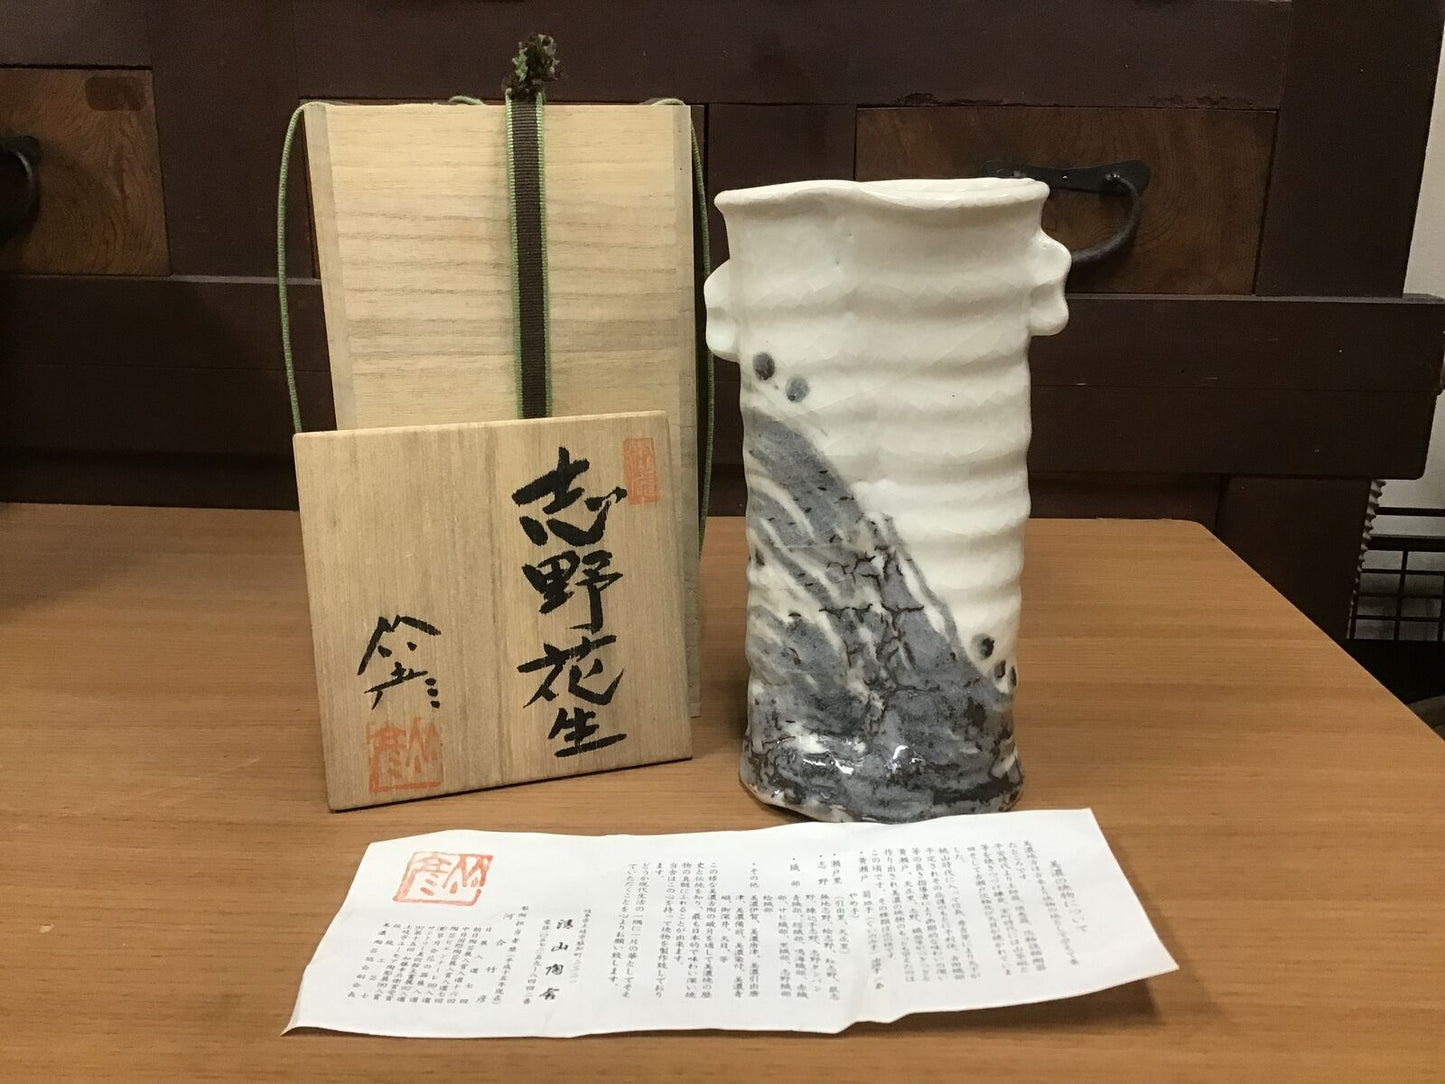 Y0646 FLOWER VASE Shino-ware signed box Japanese antique ikebana kabin Japan